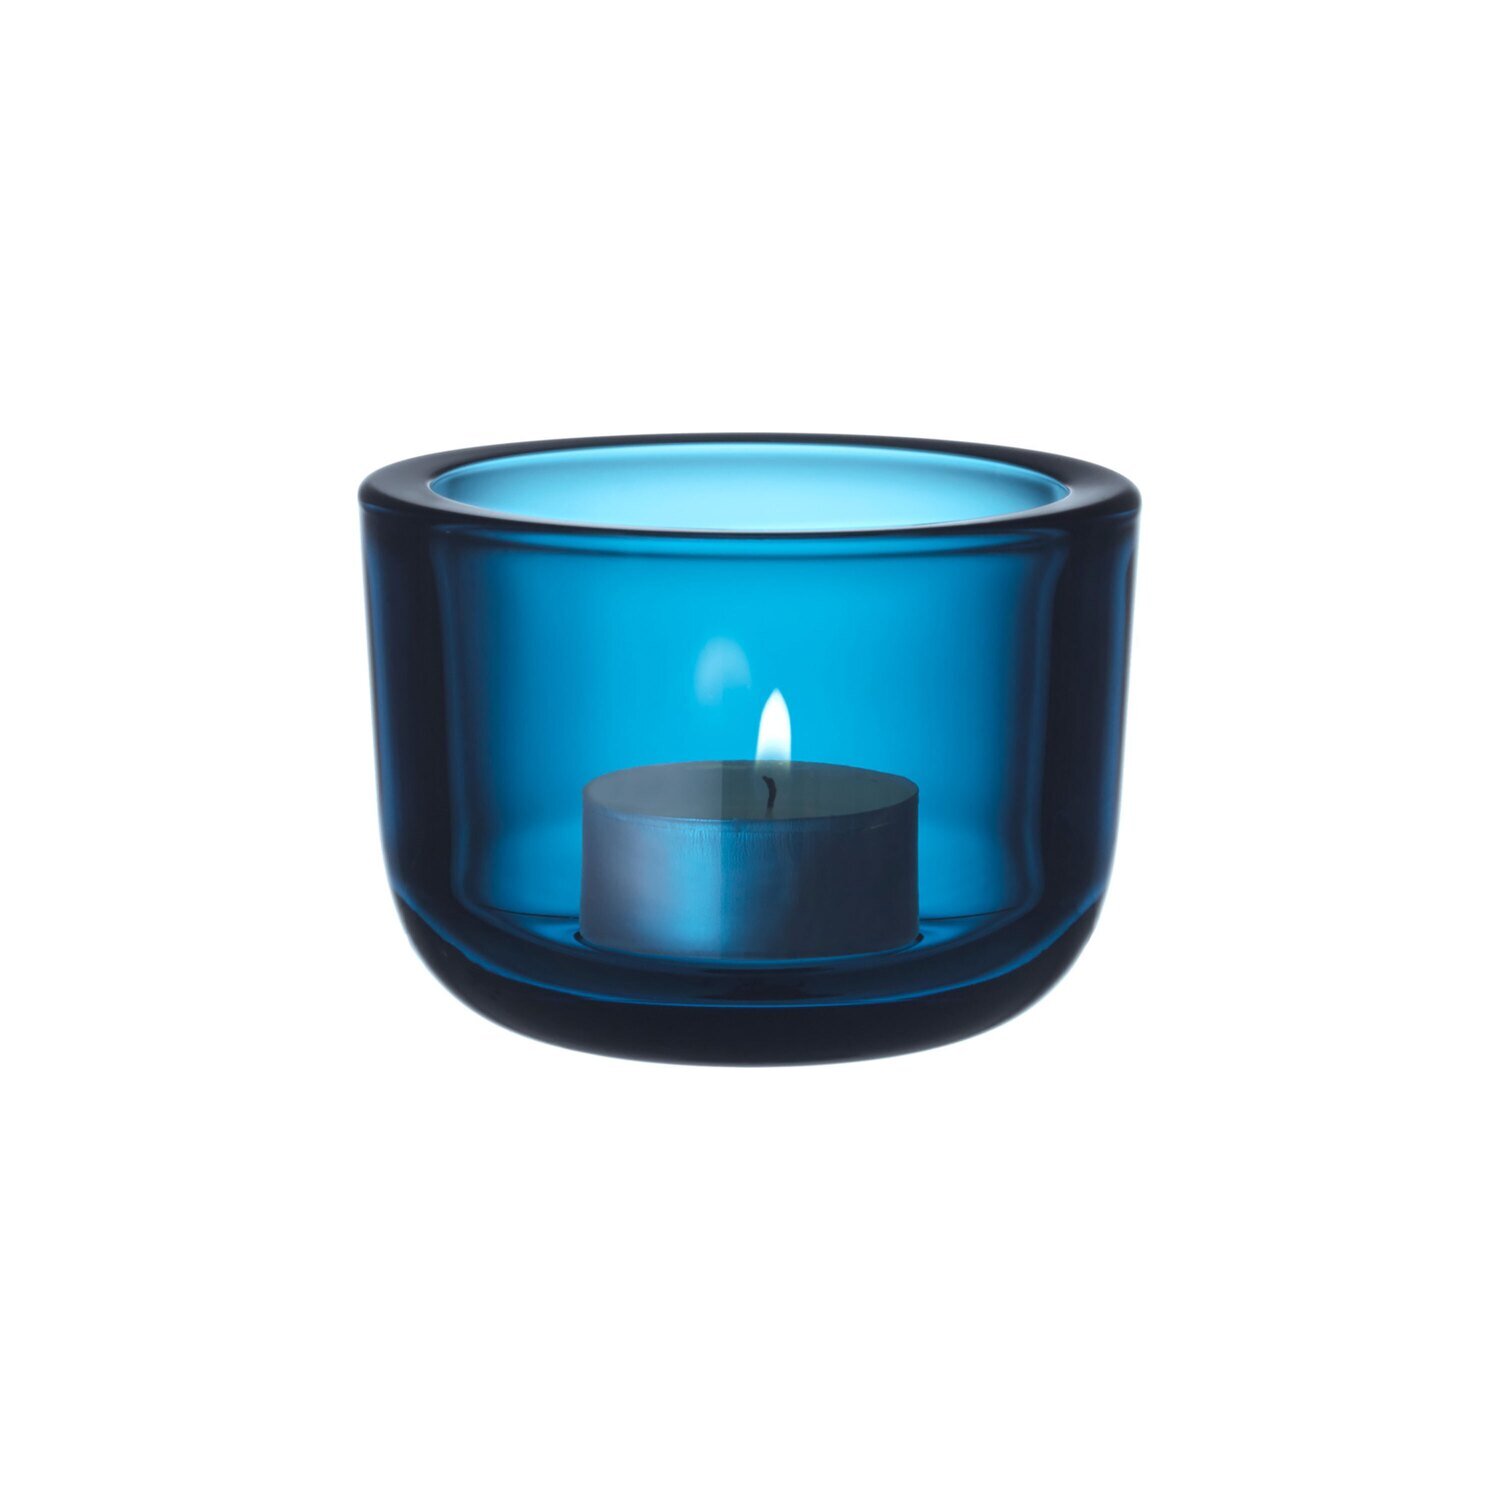 iittala Valkea Tealight Candleholder 2.25 Inch Turquoise